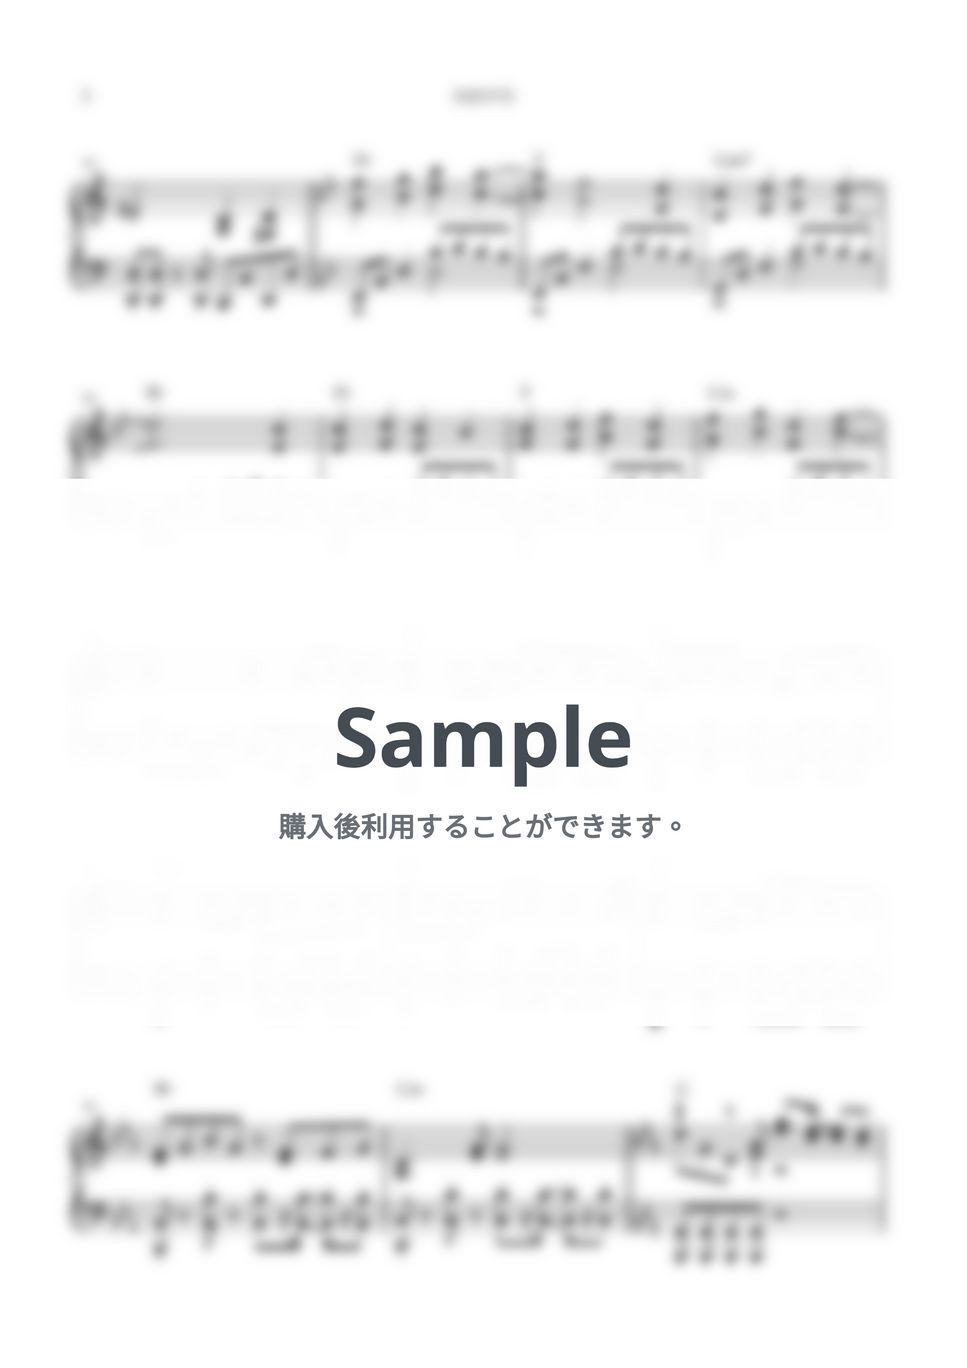 キタニタツヤ - 次回予告 (ピアノソロ/次回予告) by kanapiano